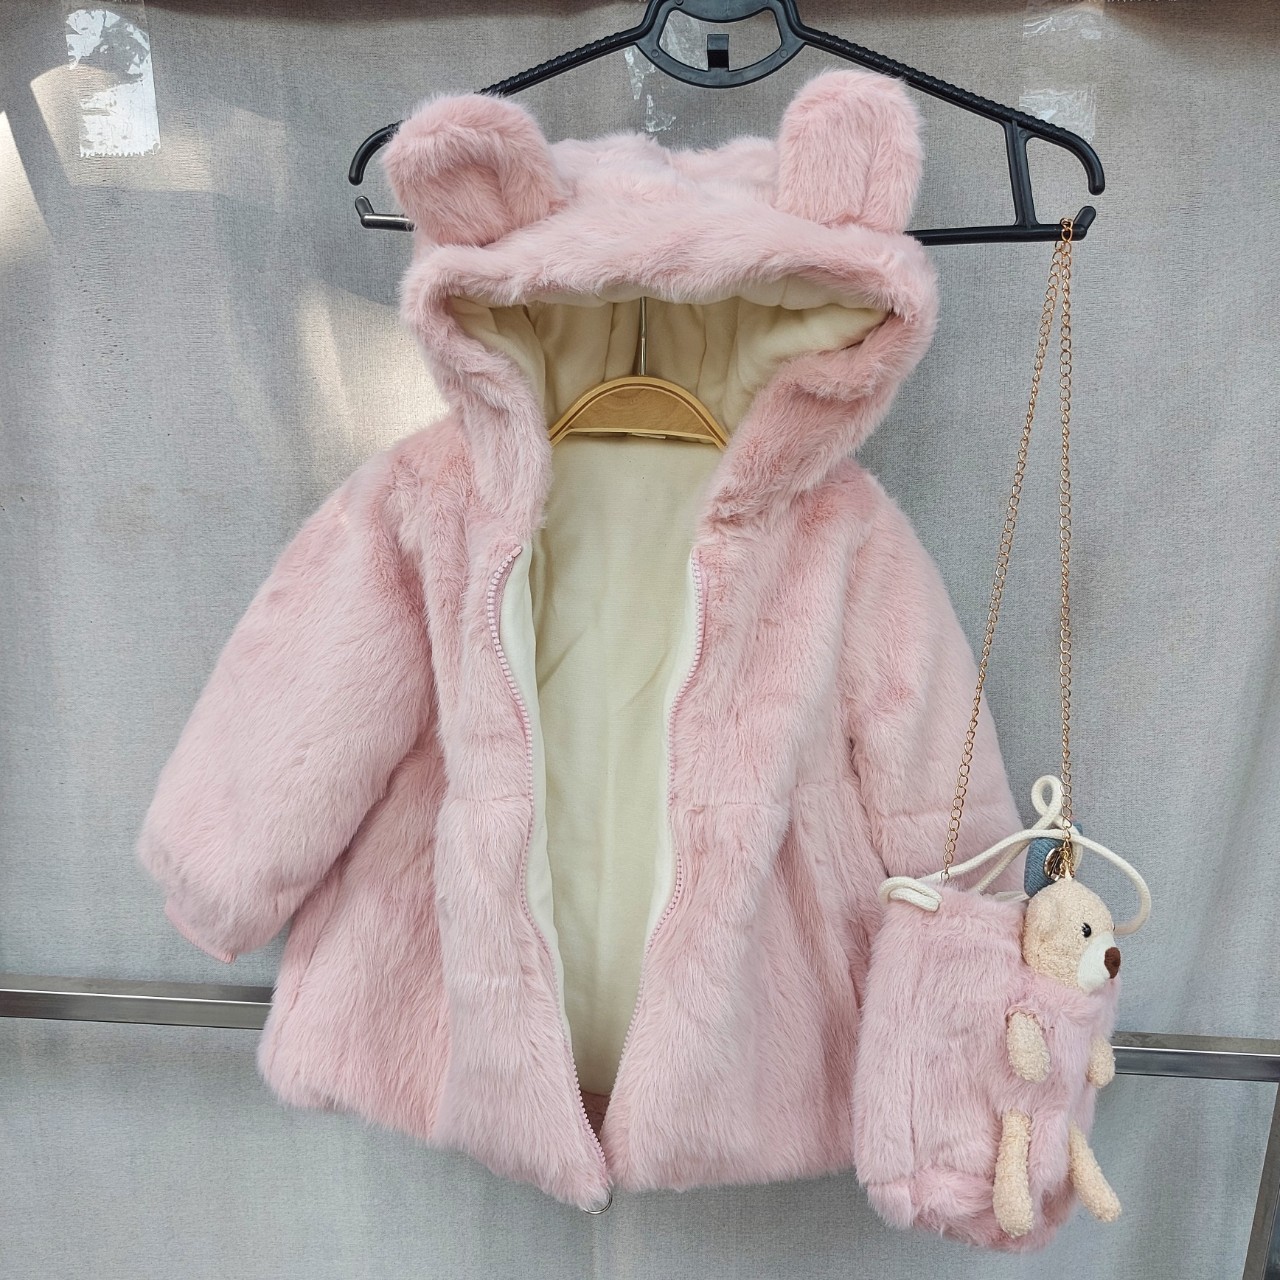 Áo khoác lông bé gái 2-7 tuổi tai thỏ kèm túi đeo. Áo lông cho bé siêu ấm hàng Quảng Châu cao cấp